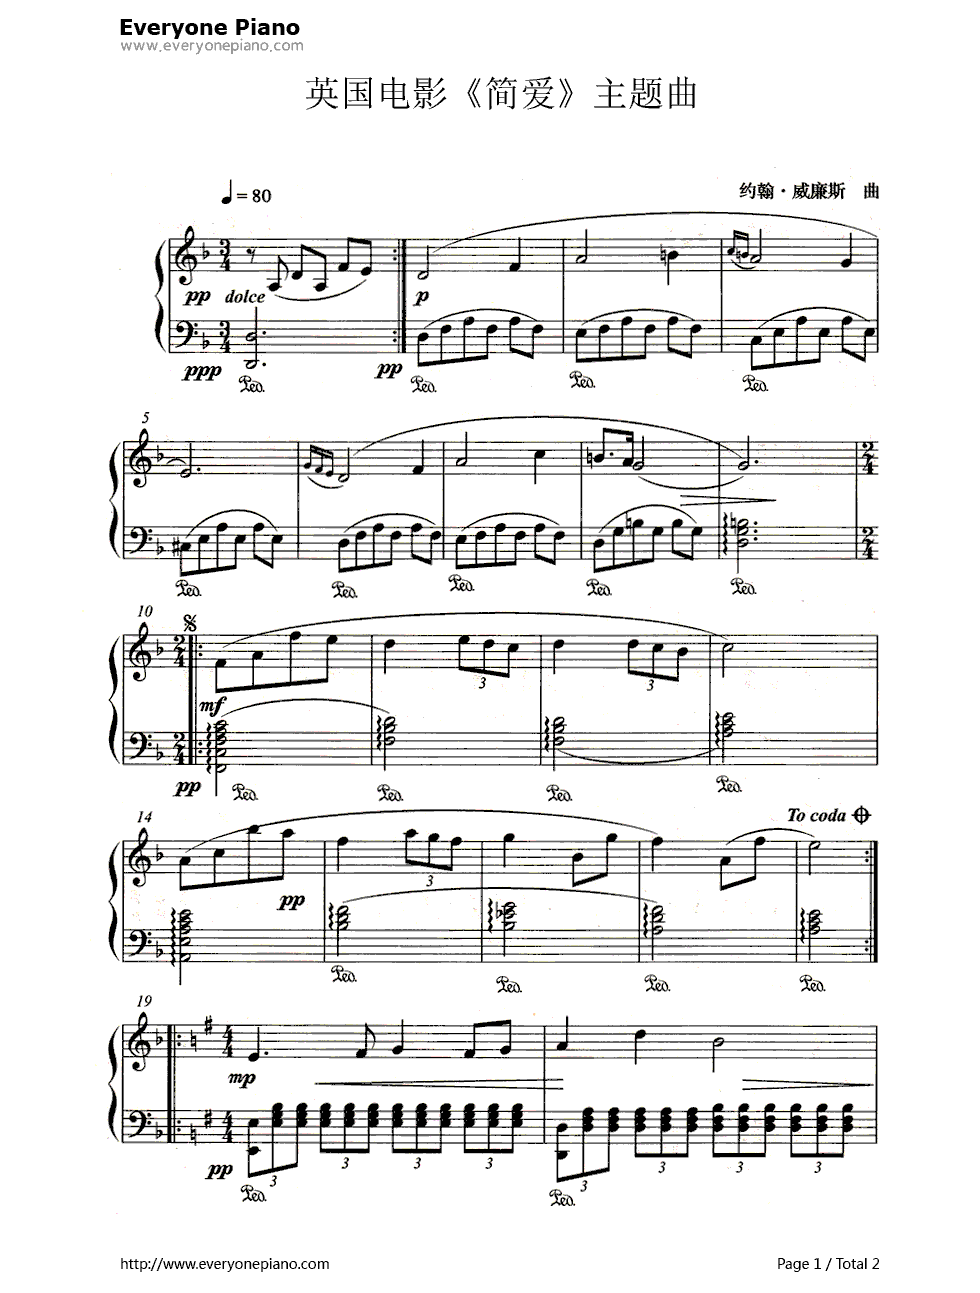 1970版《简爱》主题曲(Jane Eyre)钢琴谱-约翰·威廉姆斯(John Williams)1